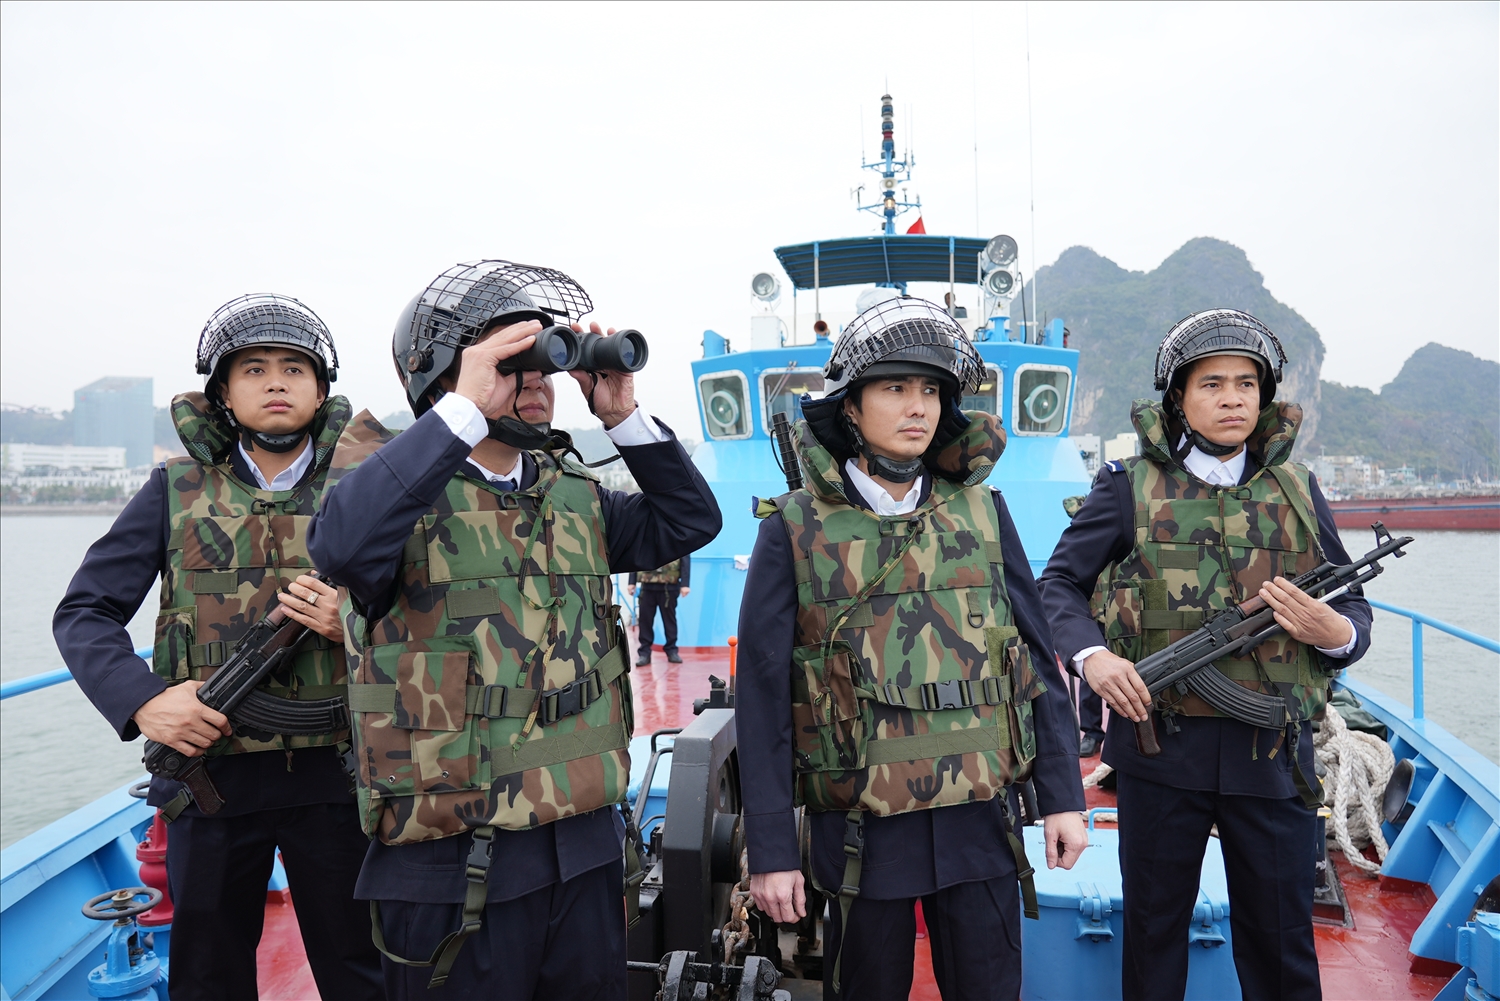 Hải đội 1, Cục Điều tra chống buôn lậu (Tổng cục Hải quan) tuần tra, kiểm soát trên vùng biển Quảng Ninh. (Ảnh Đỗ Phòng)